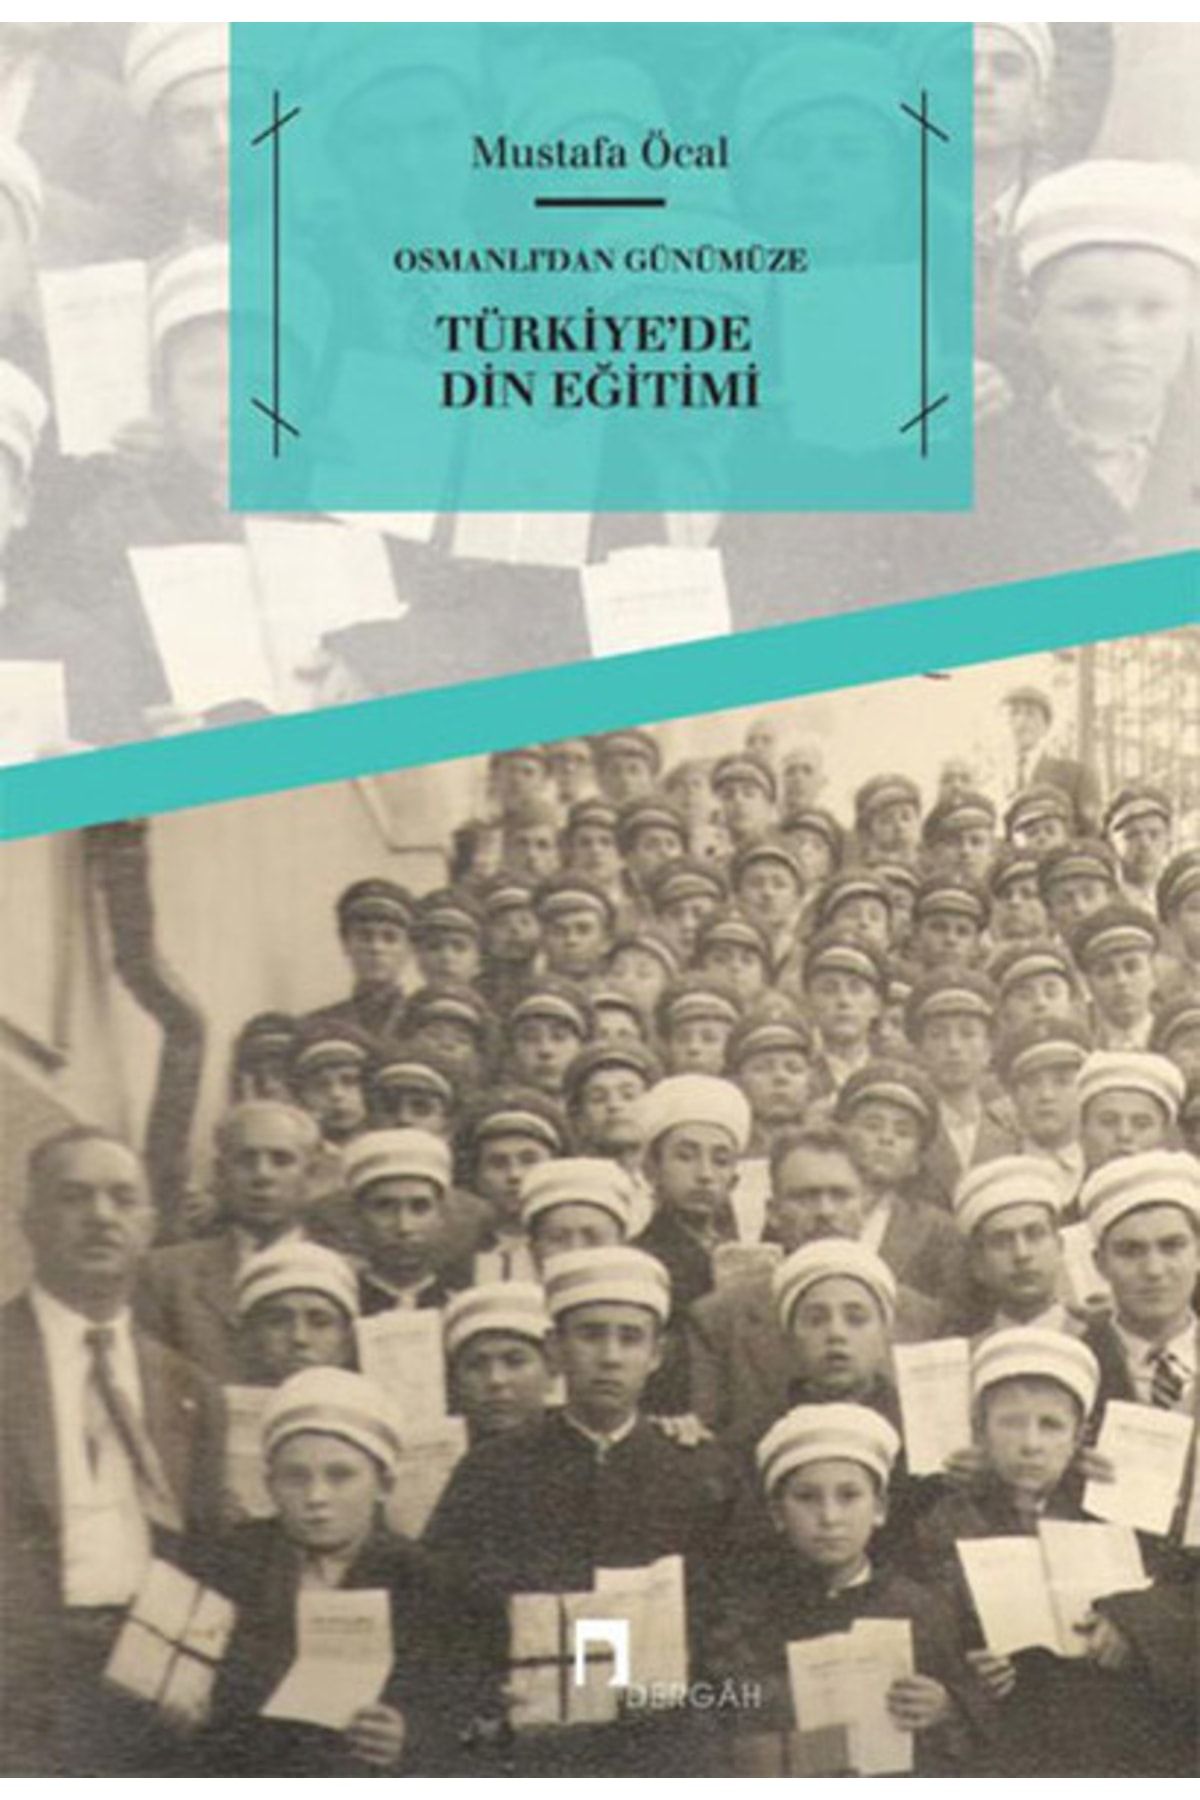 Dergah Yayınları Osmanlıdan Günümüze Türkiyede Din Eğitimi-Mustafa Öcal